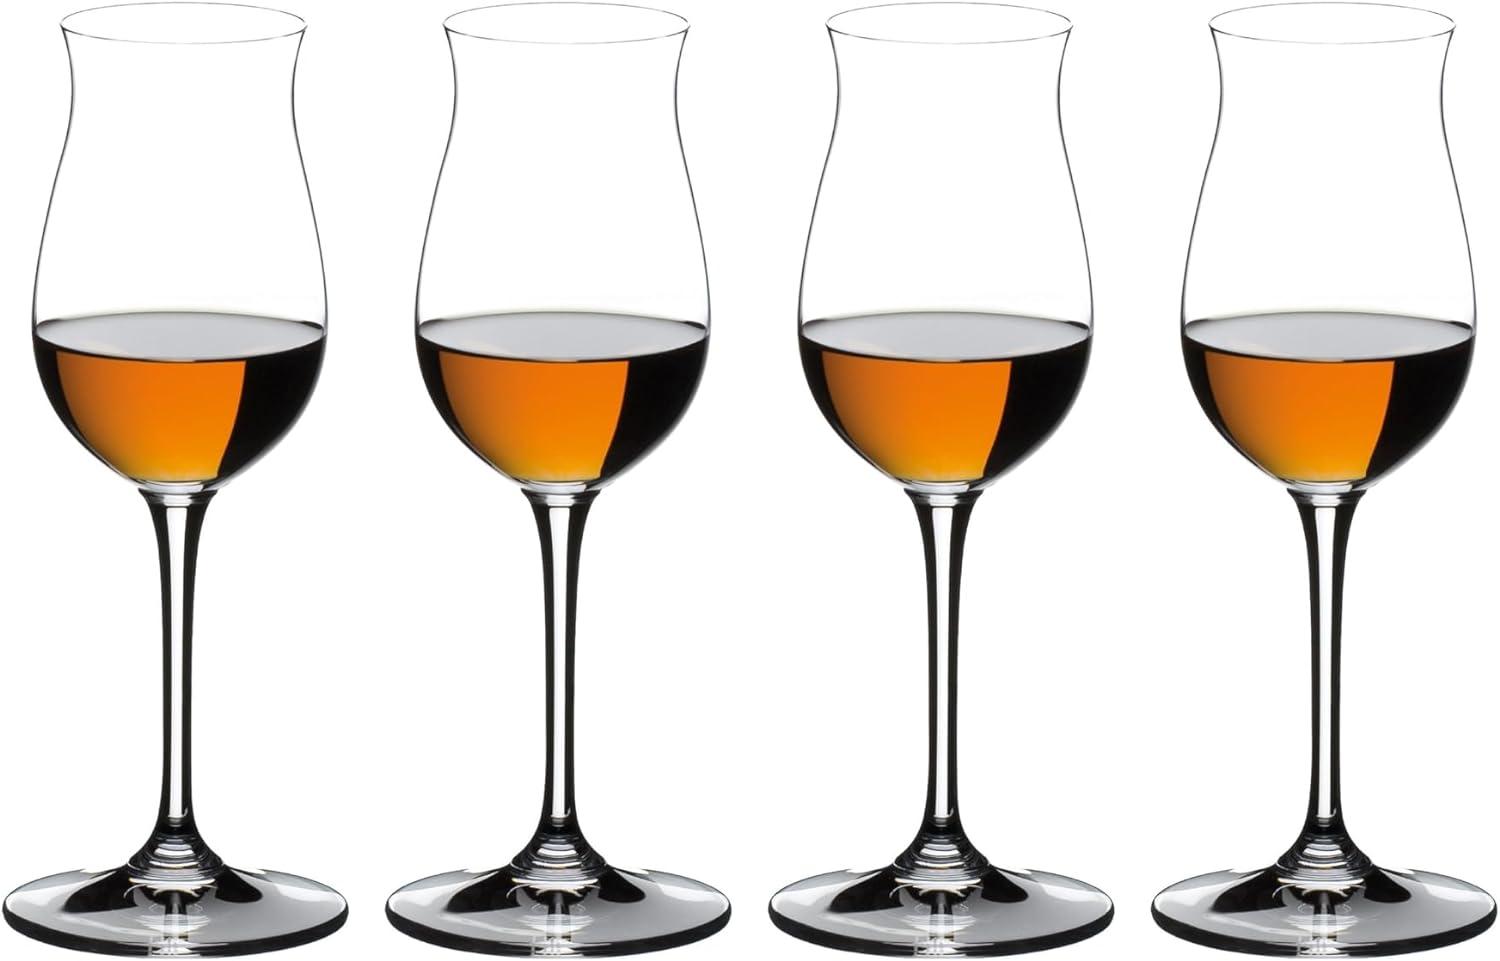 Riedel Gläser Mixing Set Cognac, 4-tlg, Cognacgläser, Kristallglas, 175 ml, 5515/71 Bild 1